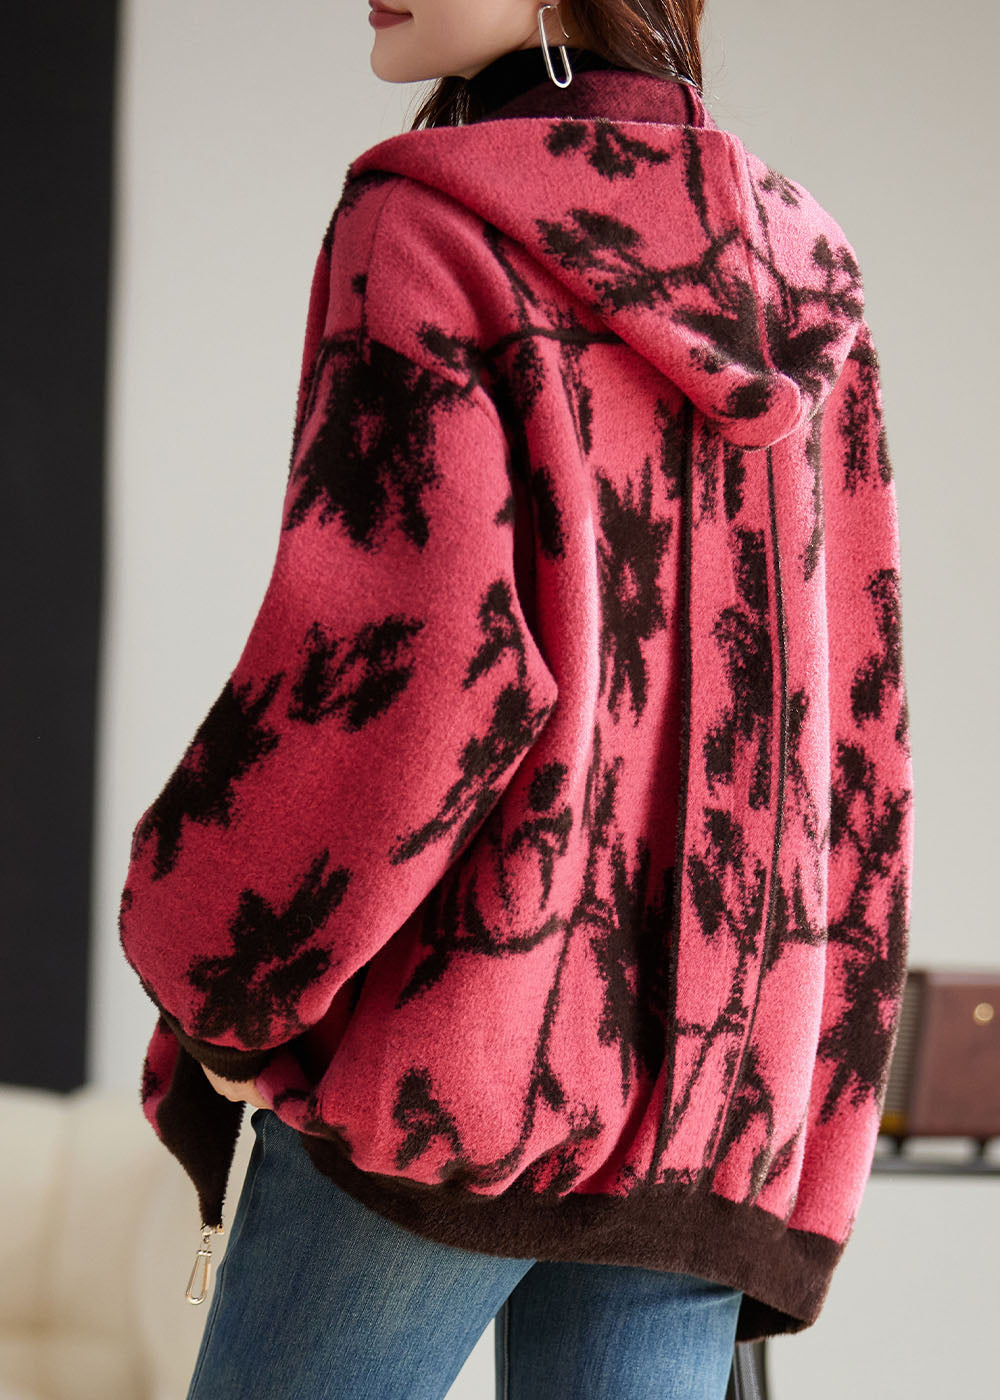 Modern Rose Print Zippered Thick Woolen Hoodies Coat Fall